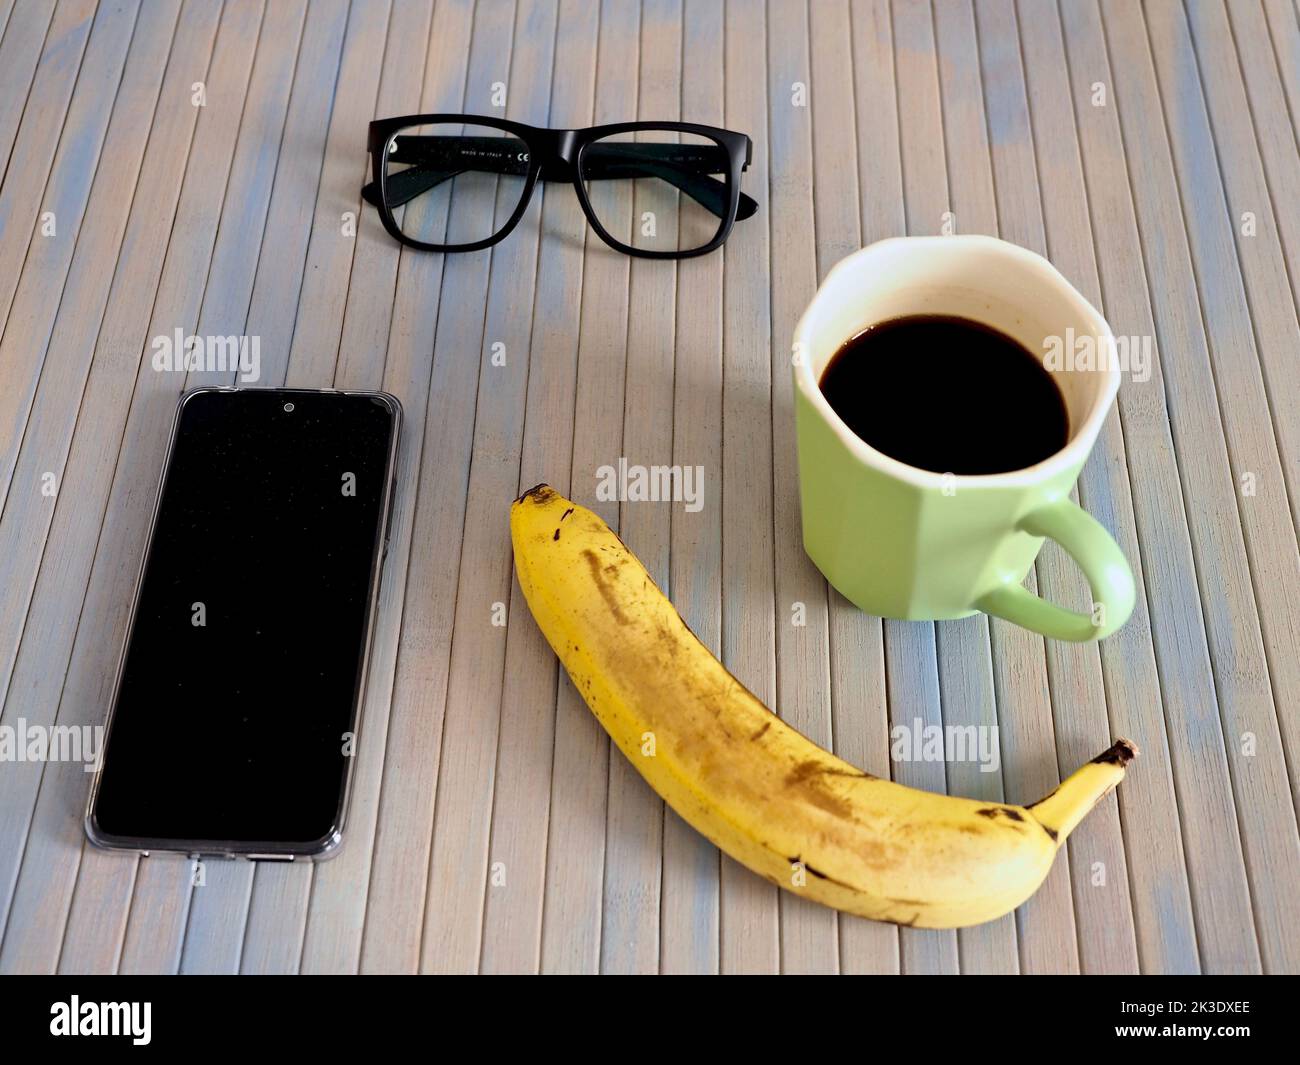 Gros plan d'une tasse de café, d'une banane, d'un smartphone et de verres sur une table en bois Banque D'Images